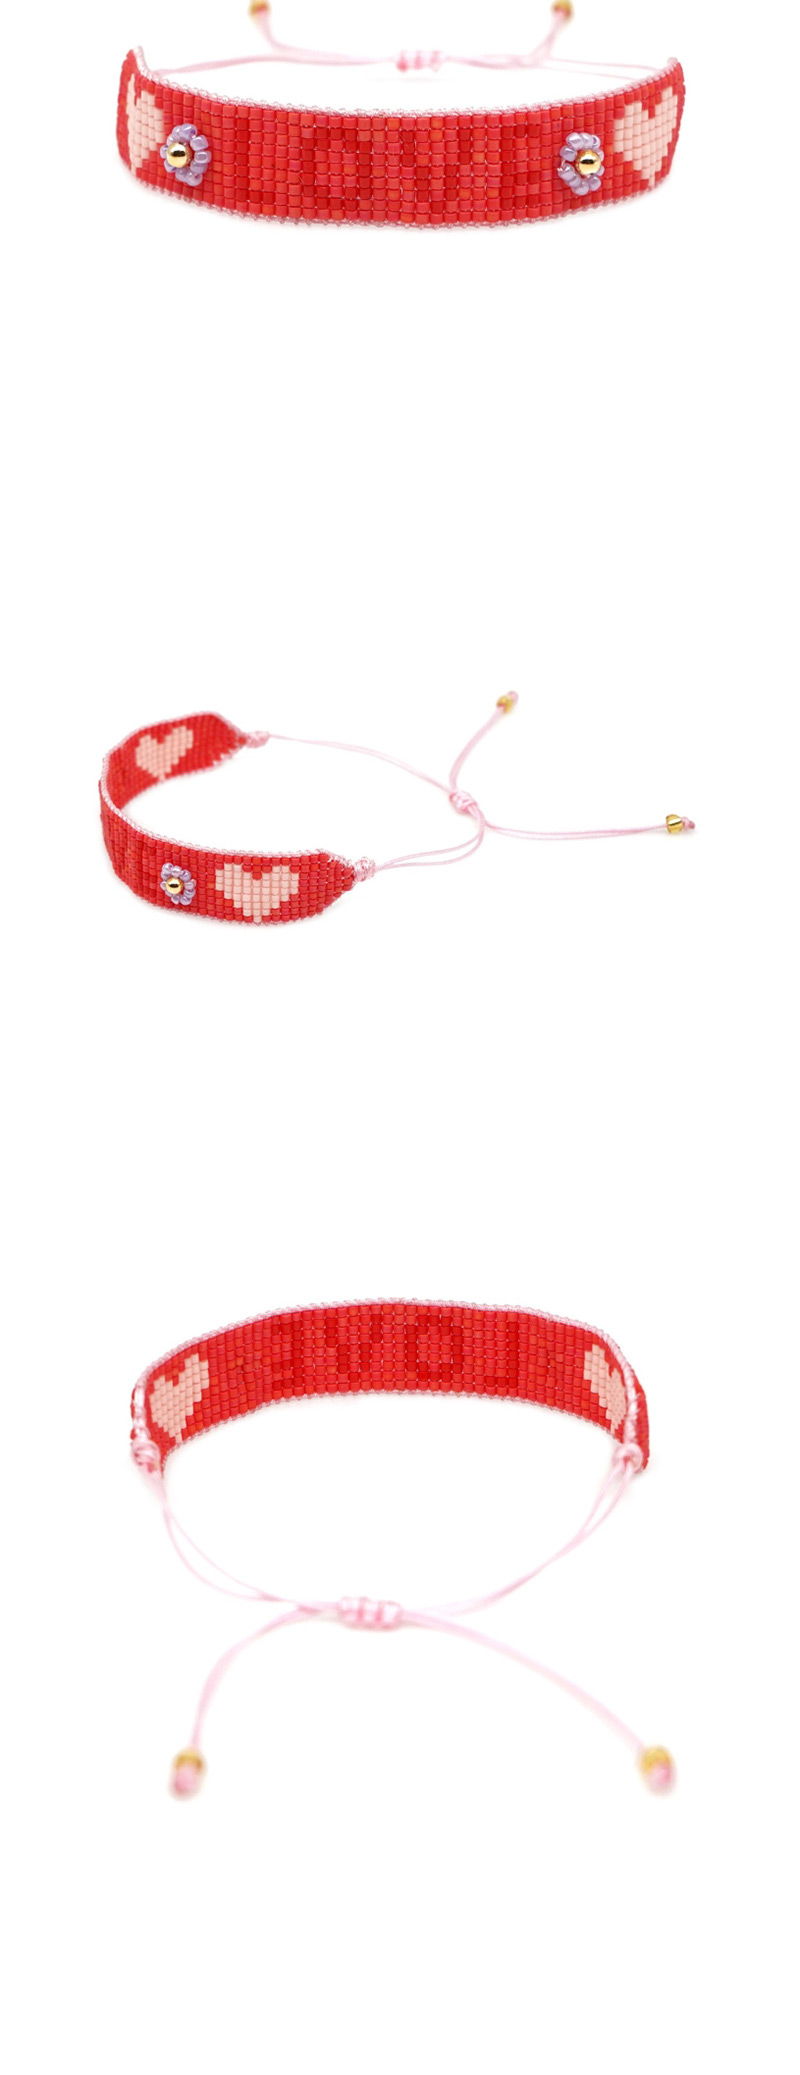  Red Rice Beads Woven Letters Love Bracelet,Beaded Bracelet